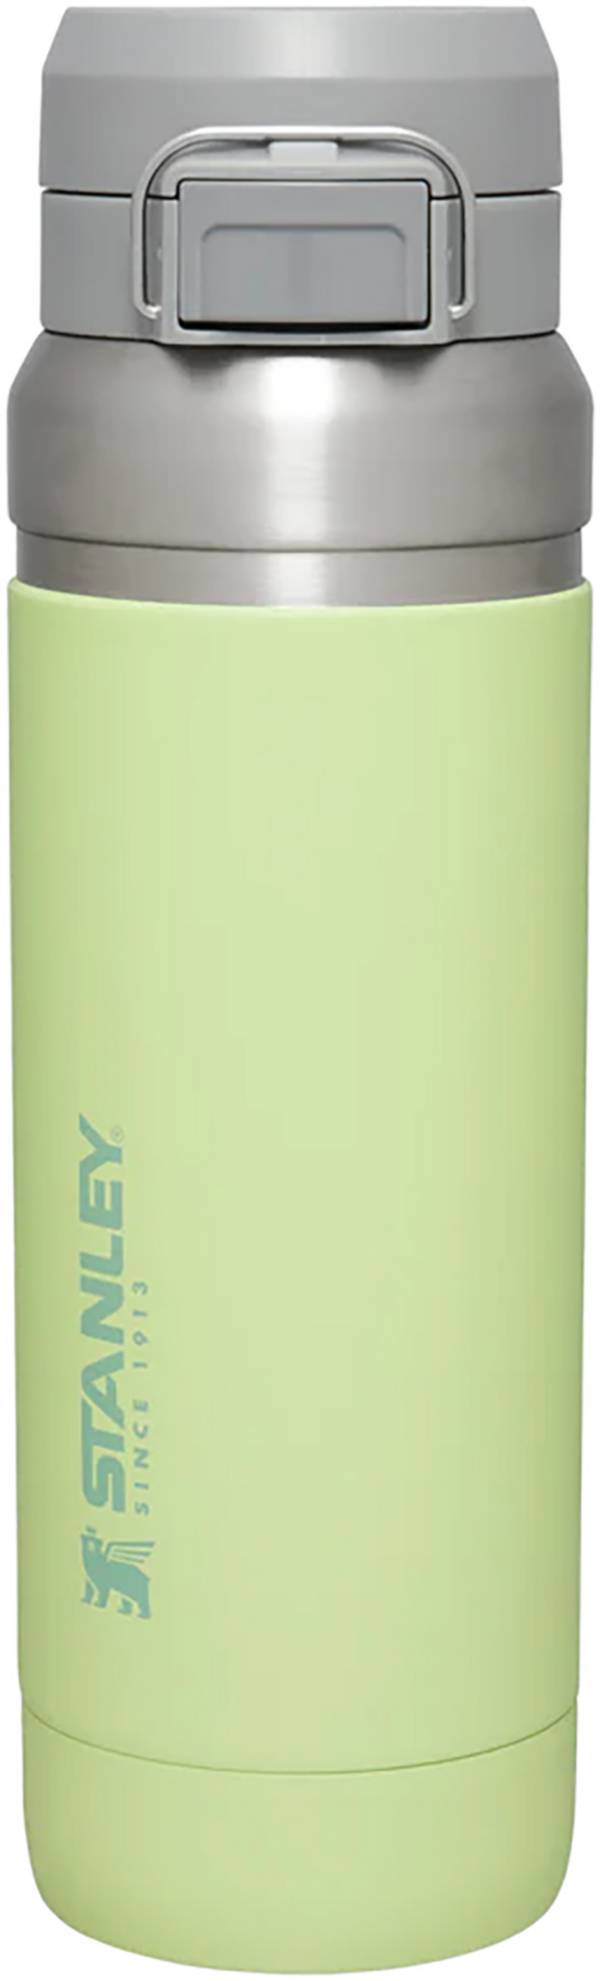  GO FLIP 700 ml polar white - vacuum bottle - STANLEY -  36.92 € - outdoorové oblečení a vybavení shop